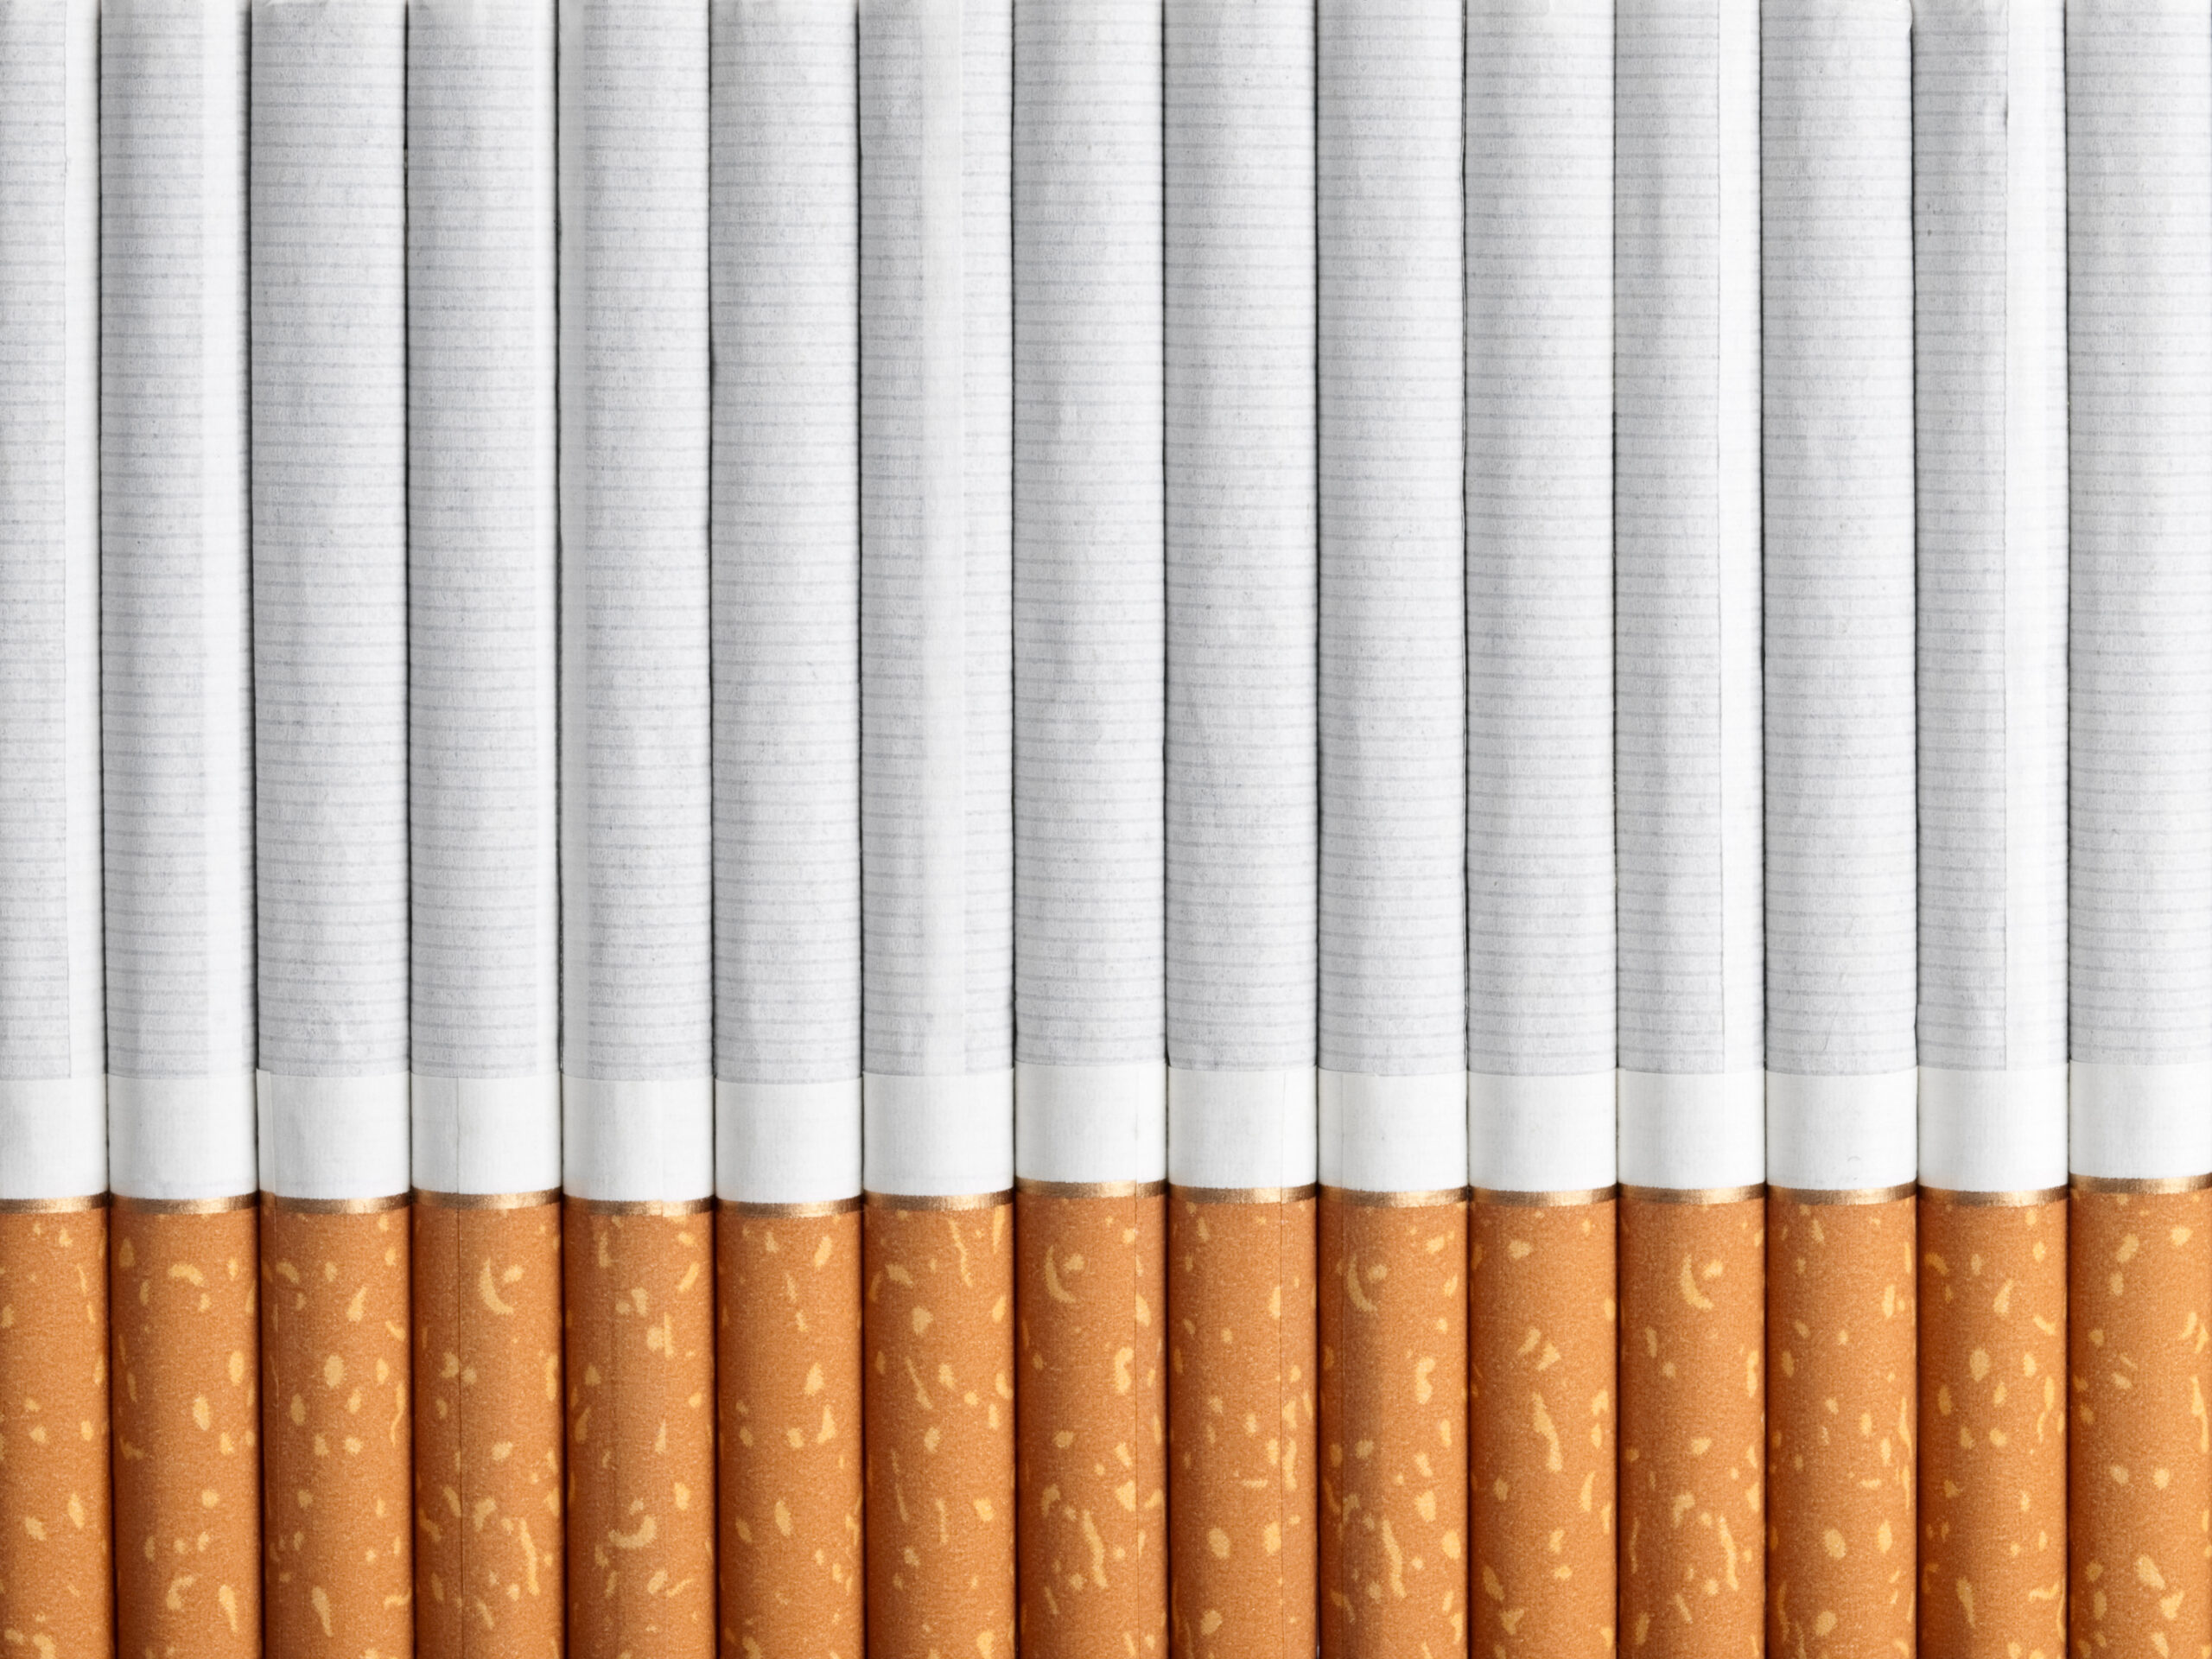 cigarette paper manufacturing